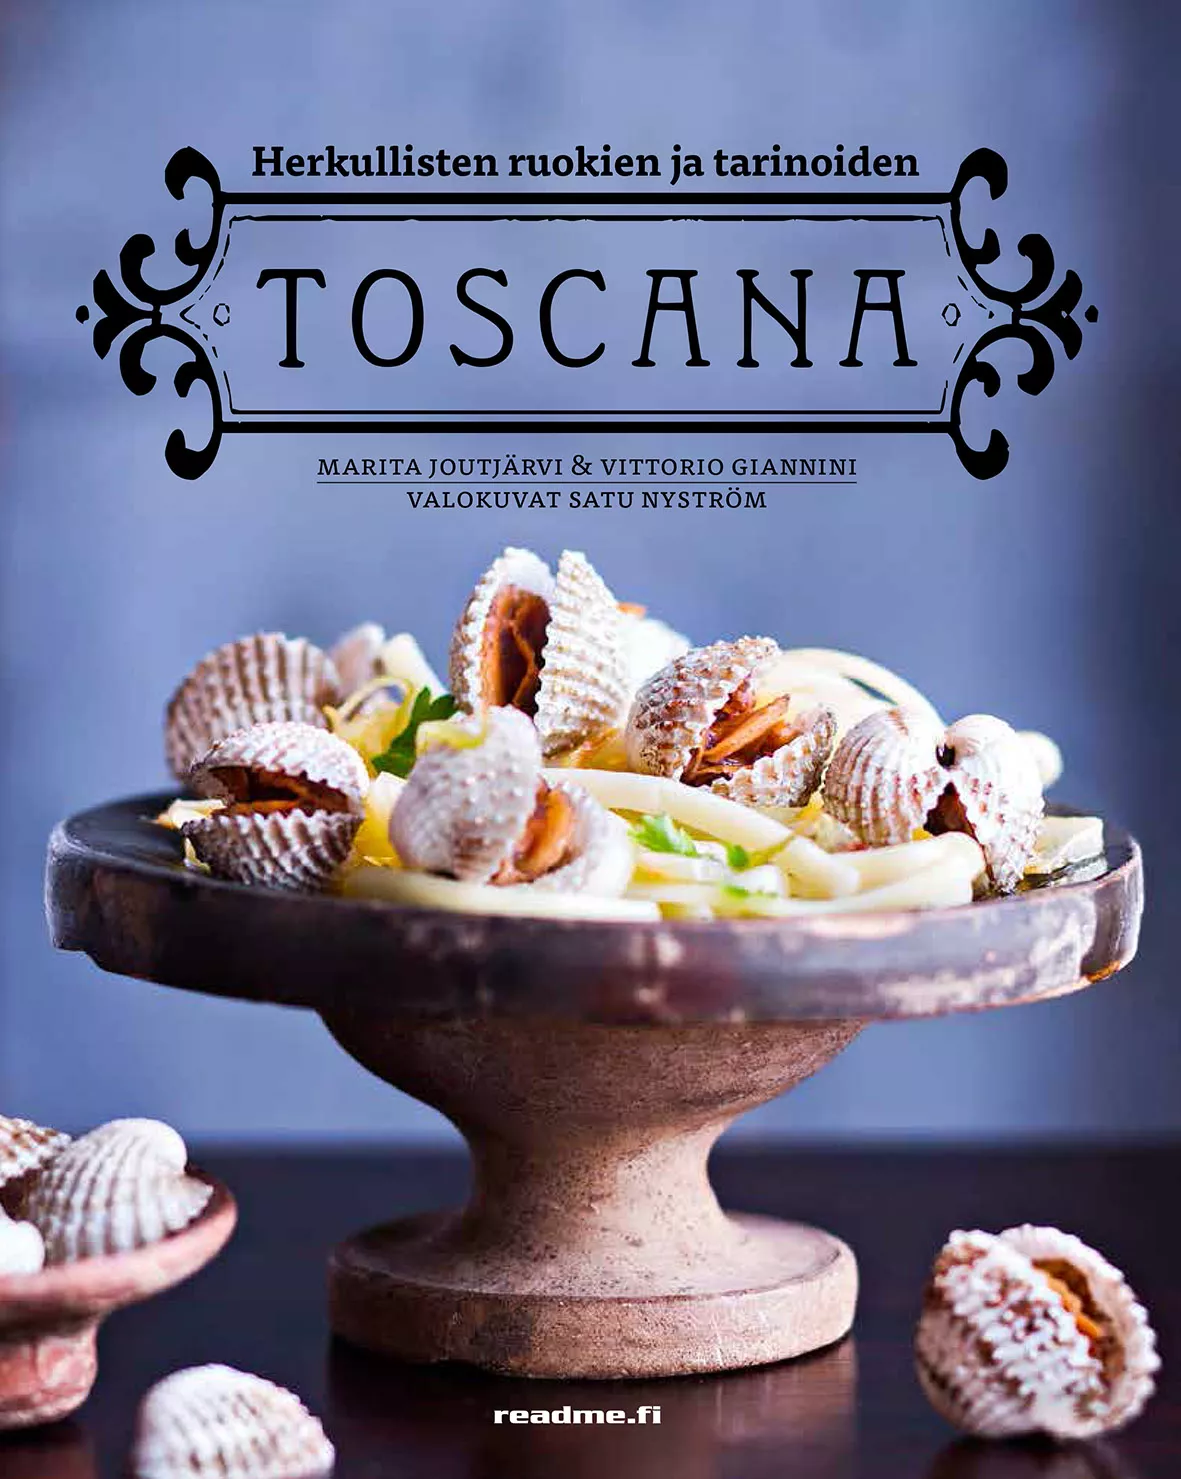 Herkullisten tarinoiden ja ruokien Toscana